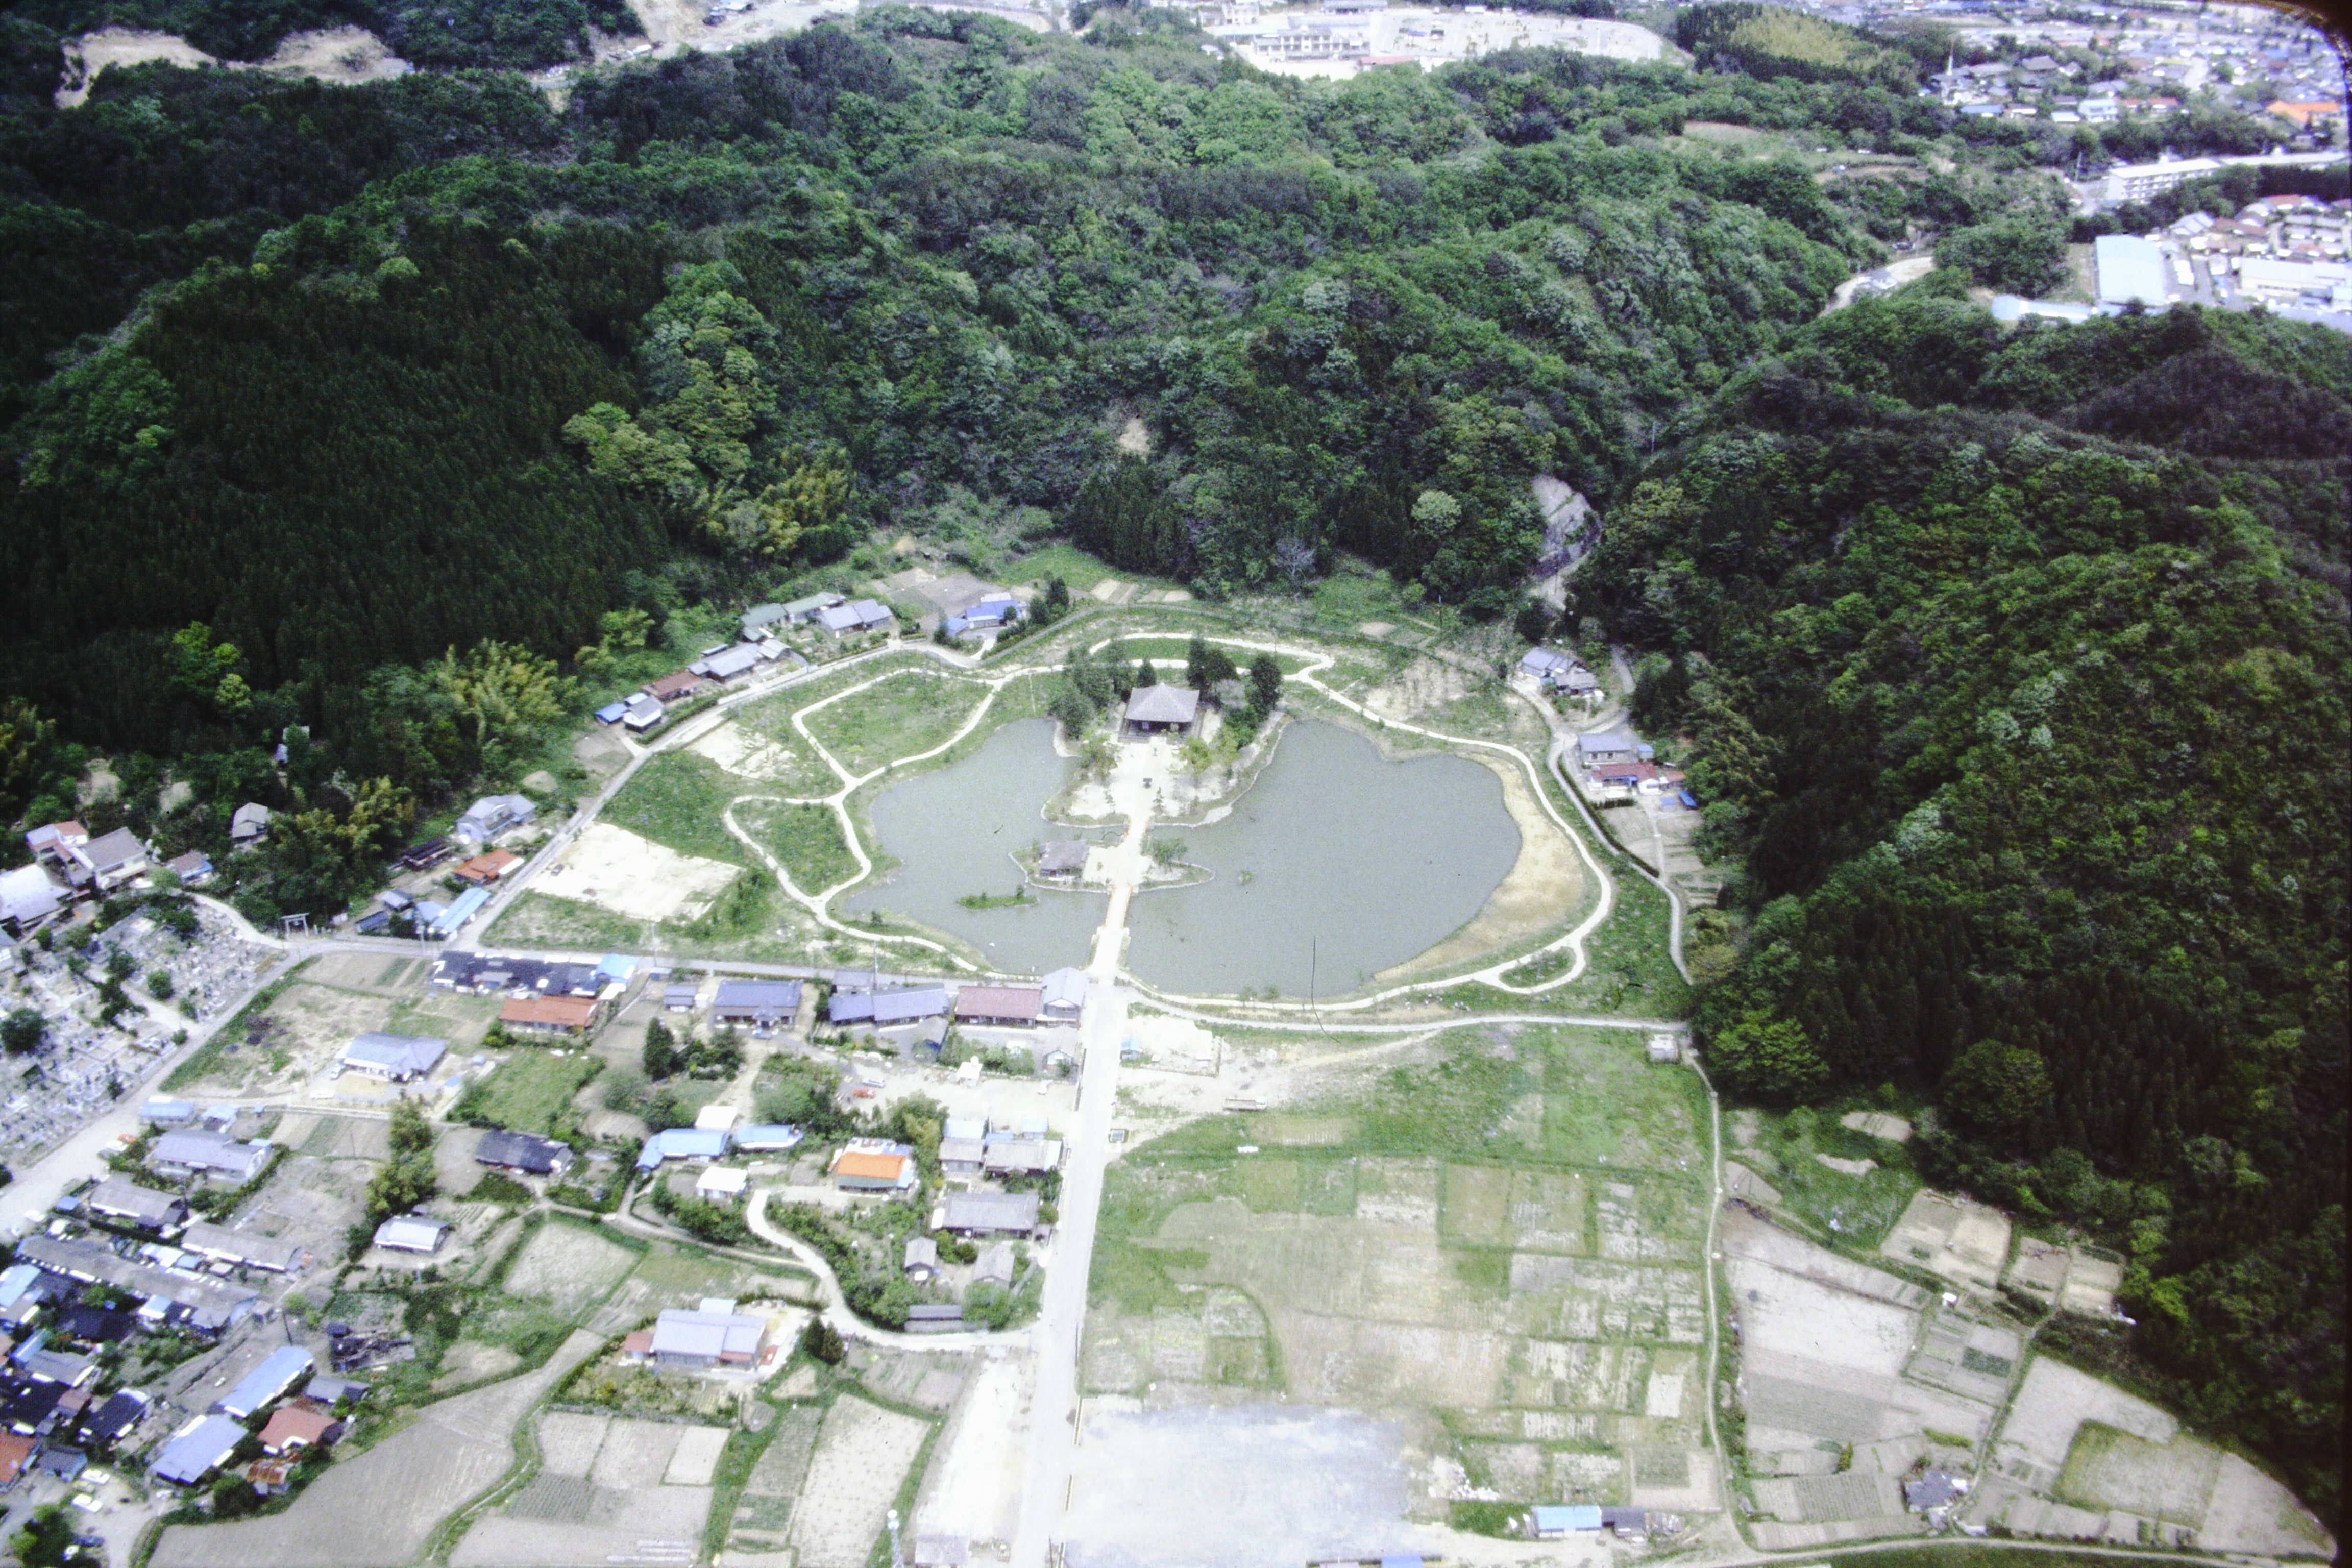 14 経塚山を借景として建築された御堂と庭園〔昭和55(1980)年、いわき市撮影〕